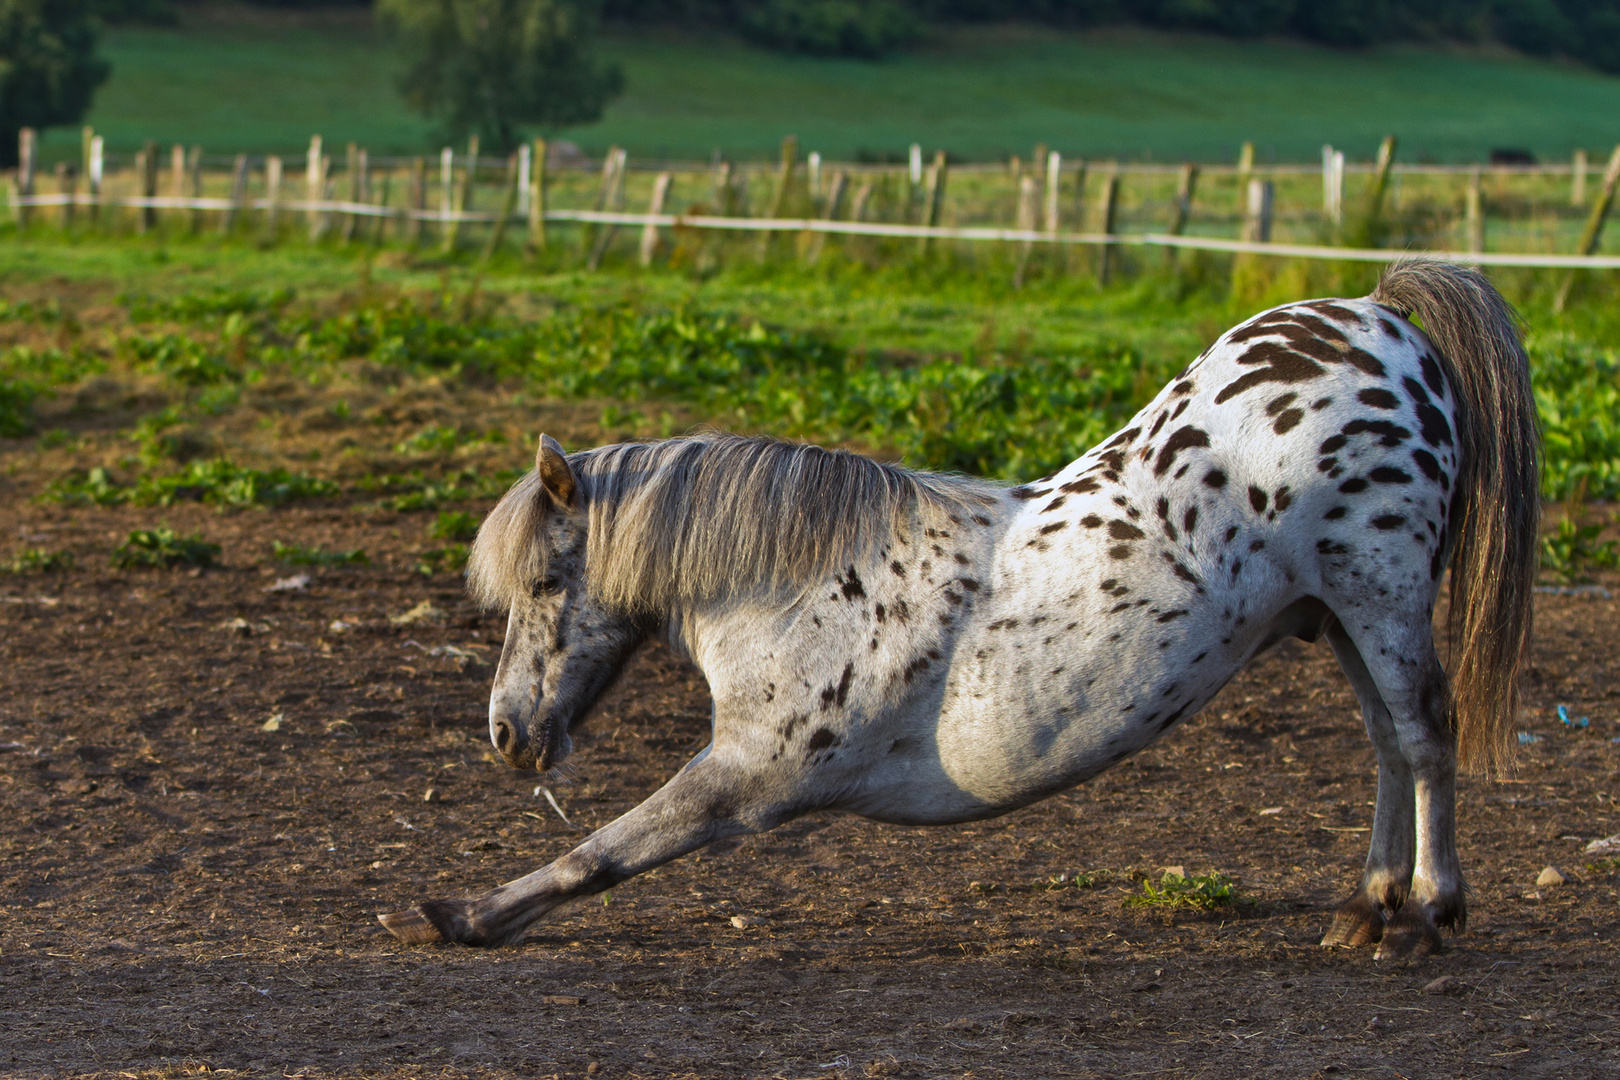 Stretching auf Pferdchenart ;-)